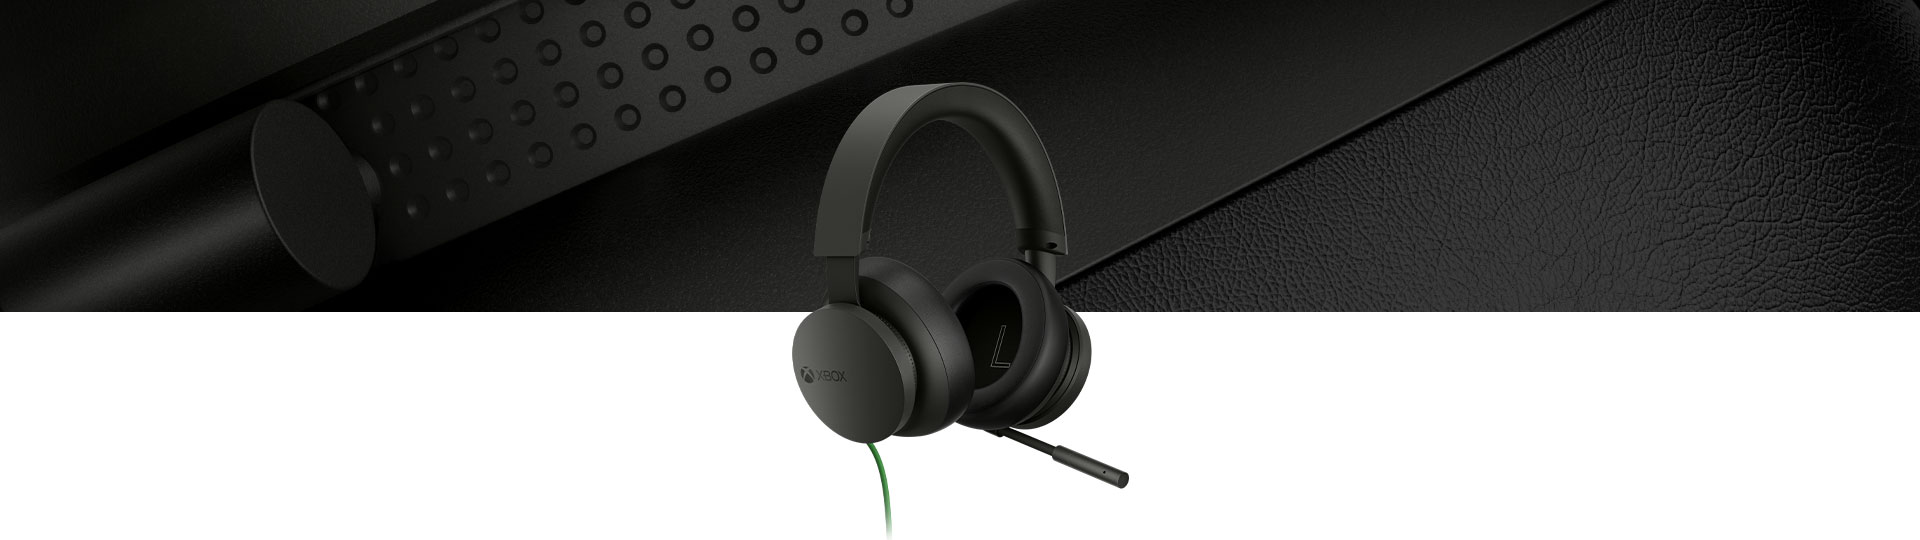 Xbox-stereoheadset met een close-up van de headset op de achtergrond